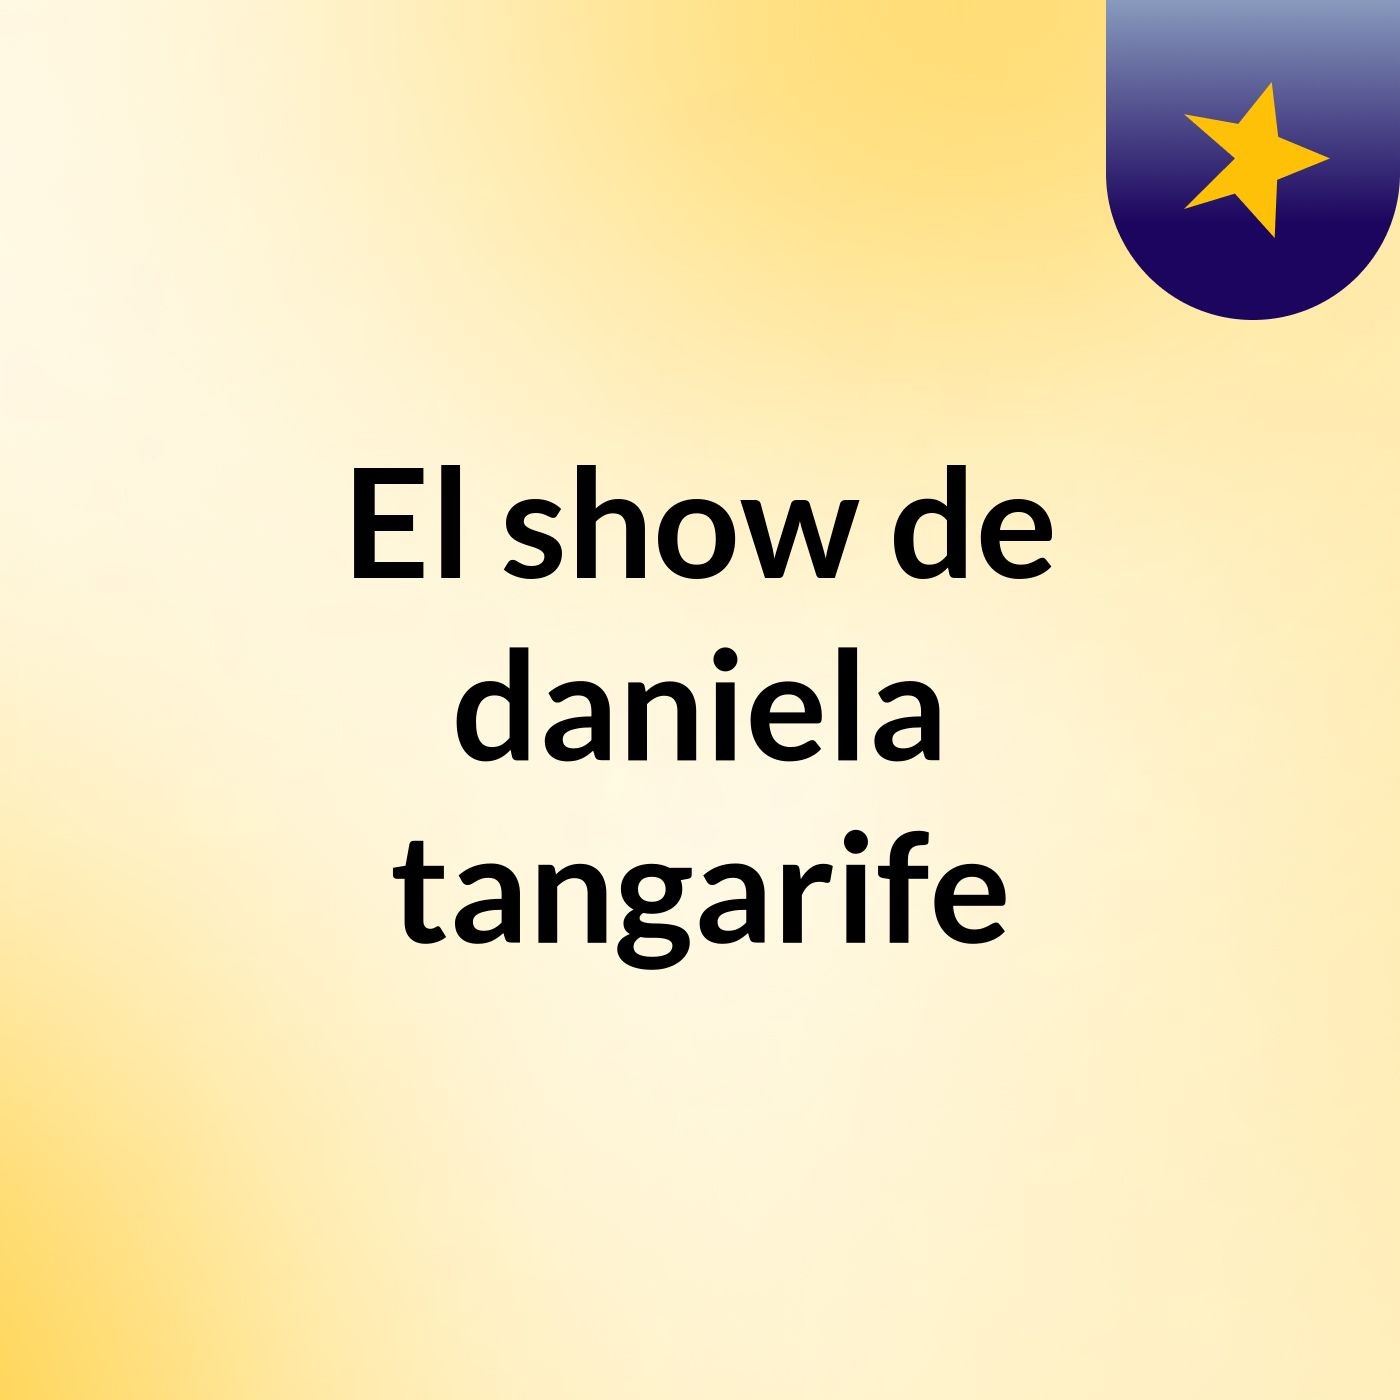 El show de daniela tangarife